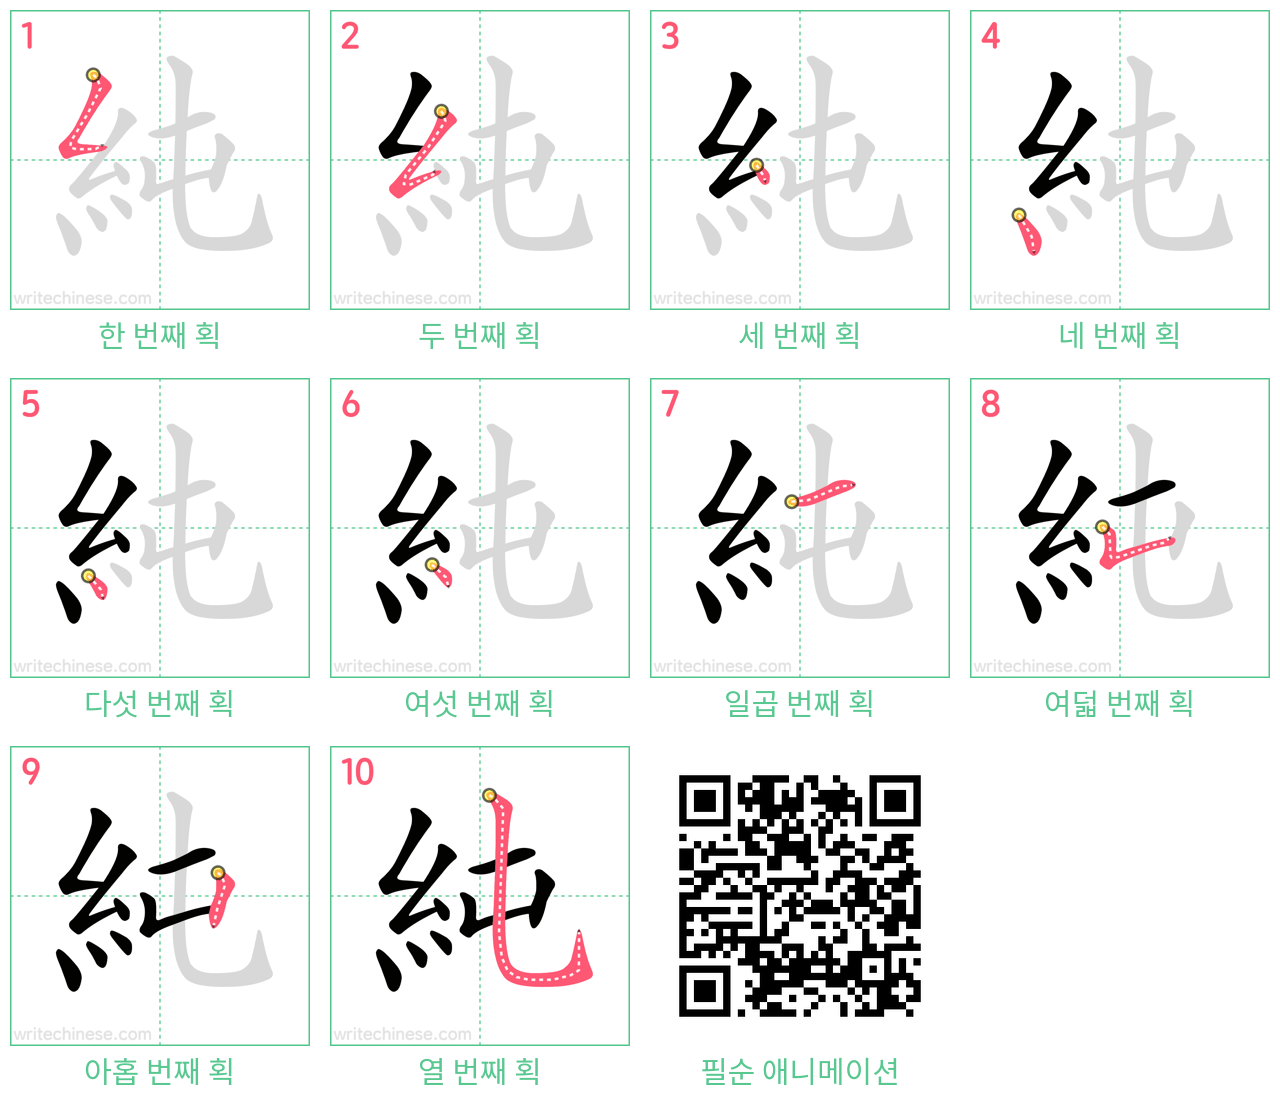 純 step-by-step stroke order diagrams